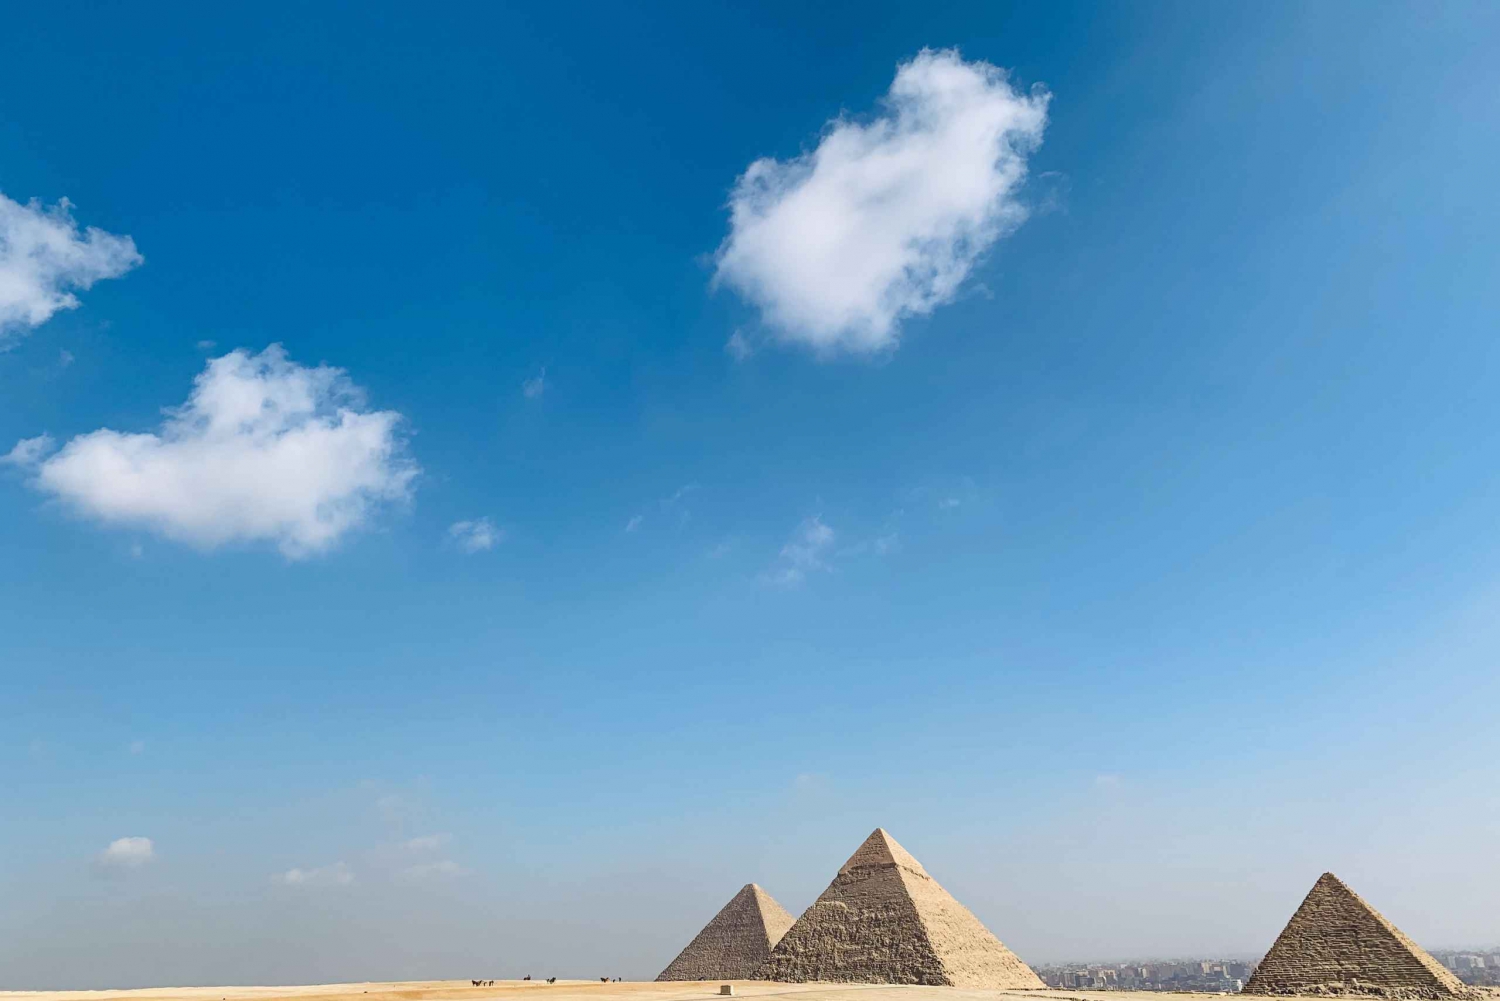 Cairo: Giza Pyramids, Sphinx, Saqqara & Memphis Private Tour